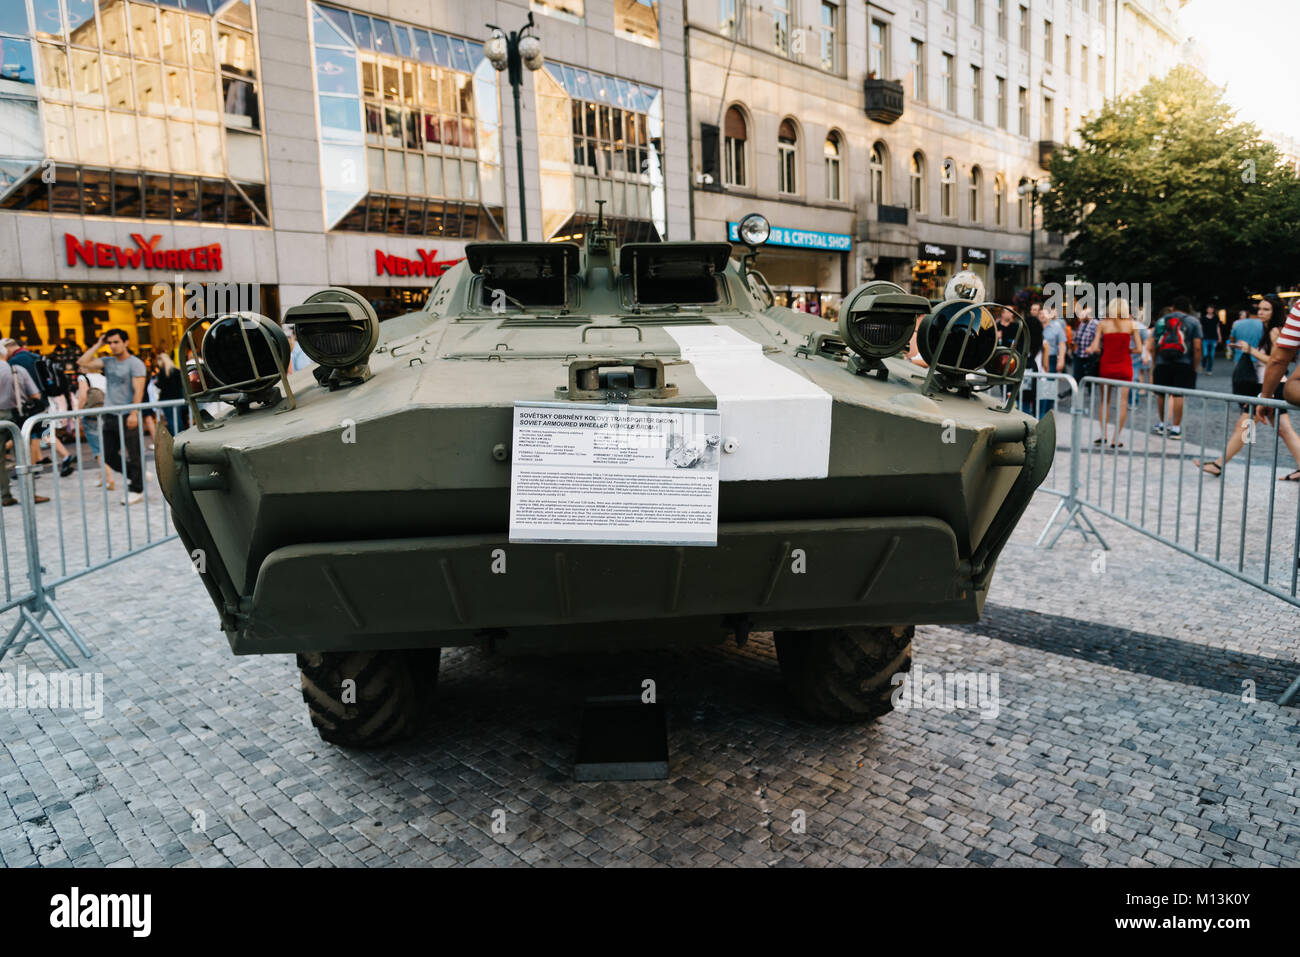 Prag, Tschechische Republik - 18. August 2017: Alte sowjetischer Panzer in der Ausstellung auf dem Wenzelsplatz, Prager Frühling und die Sowjetunion Invasion Stockfoto